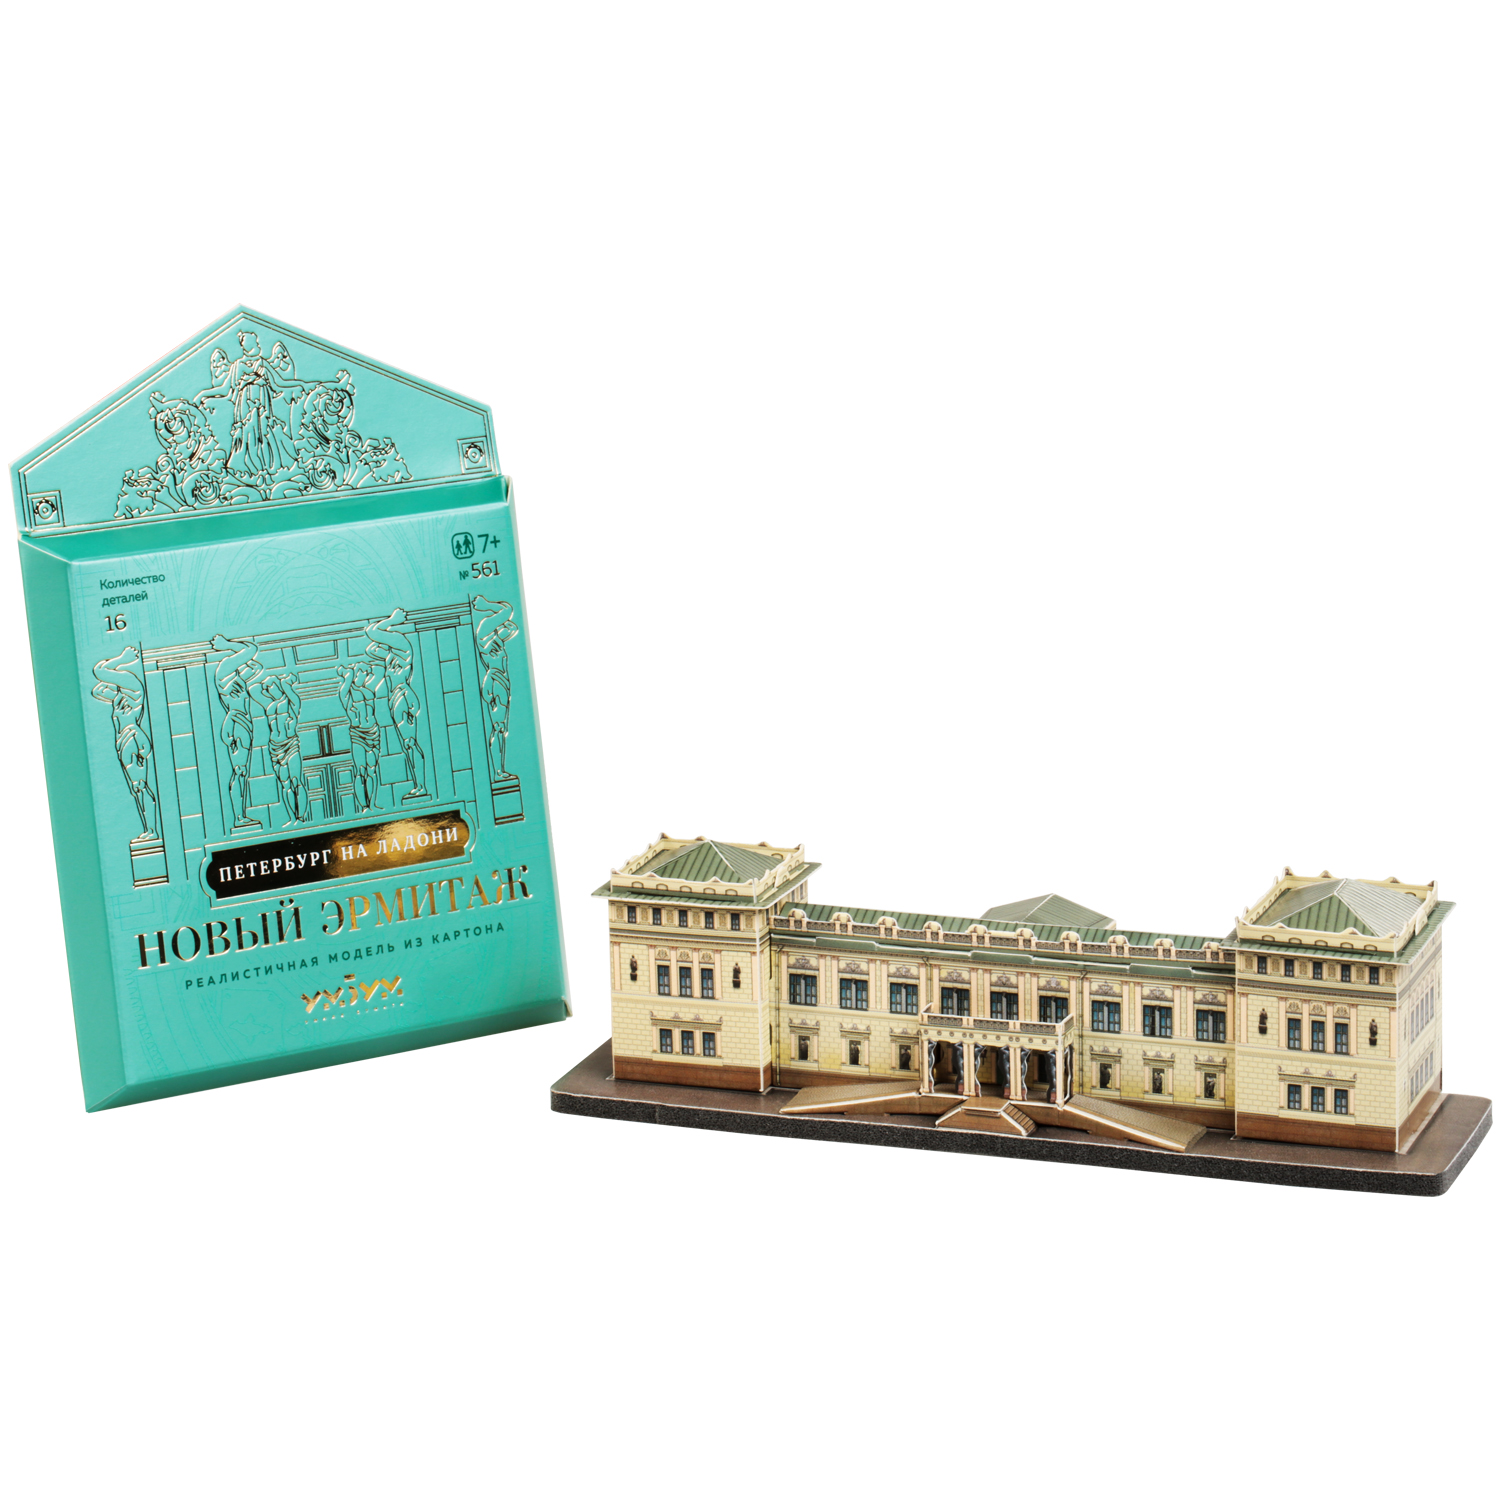 Сборная модель Умная бумага Города в миниатюре Новый Эрмитаж 561 561 - фото 4